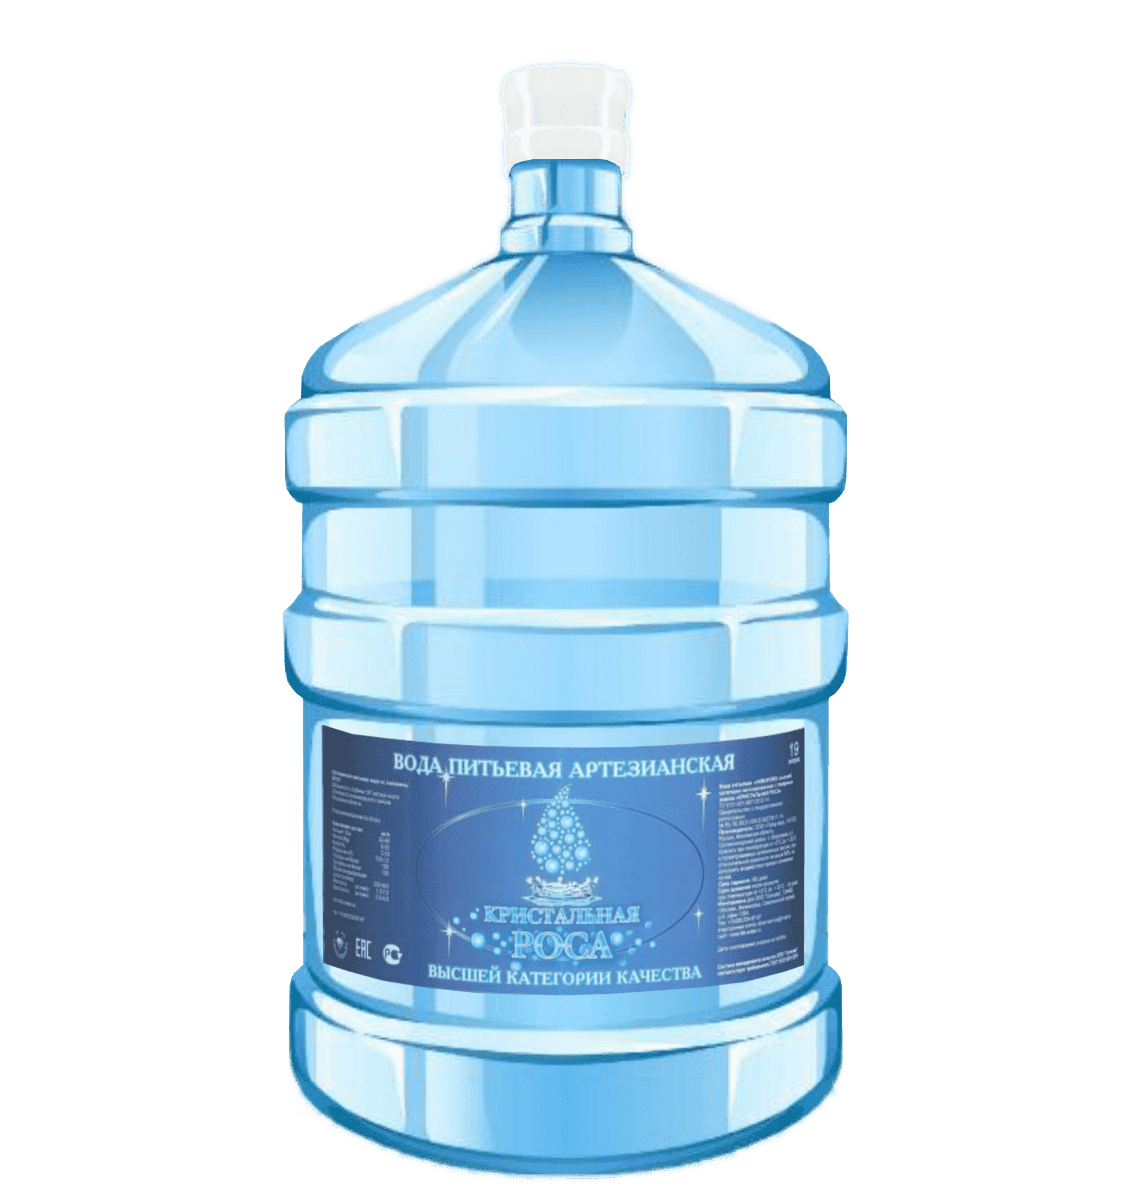 Бутылка воды 19л. Кристальная вода 19л. Гидролайф 19л. Артезианская бутилированная вода. Бутылка воды 19 литров.